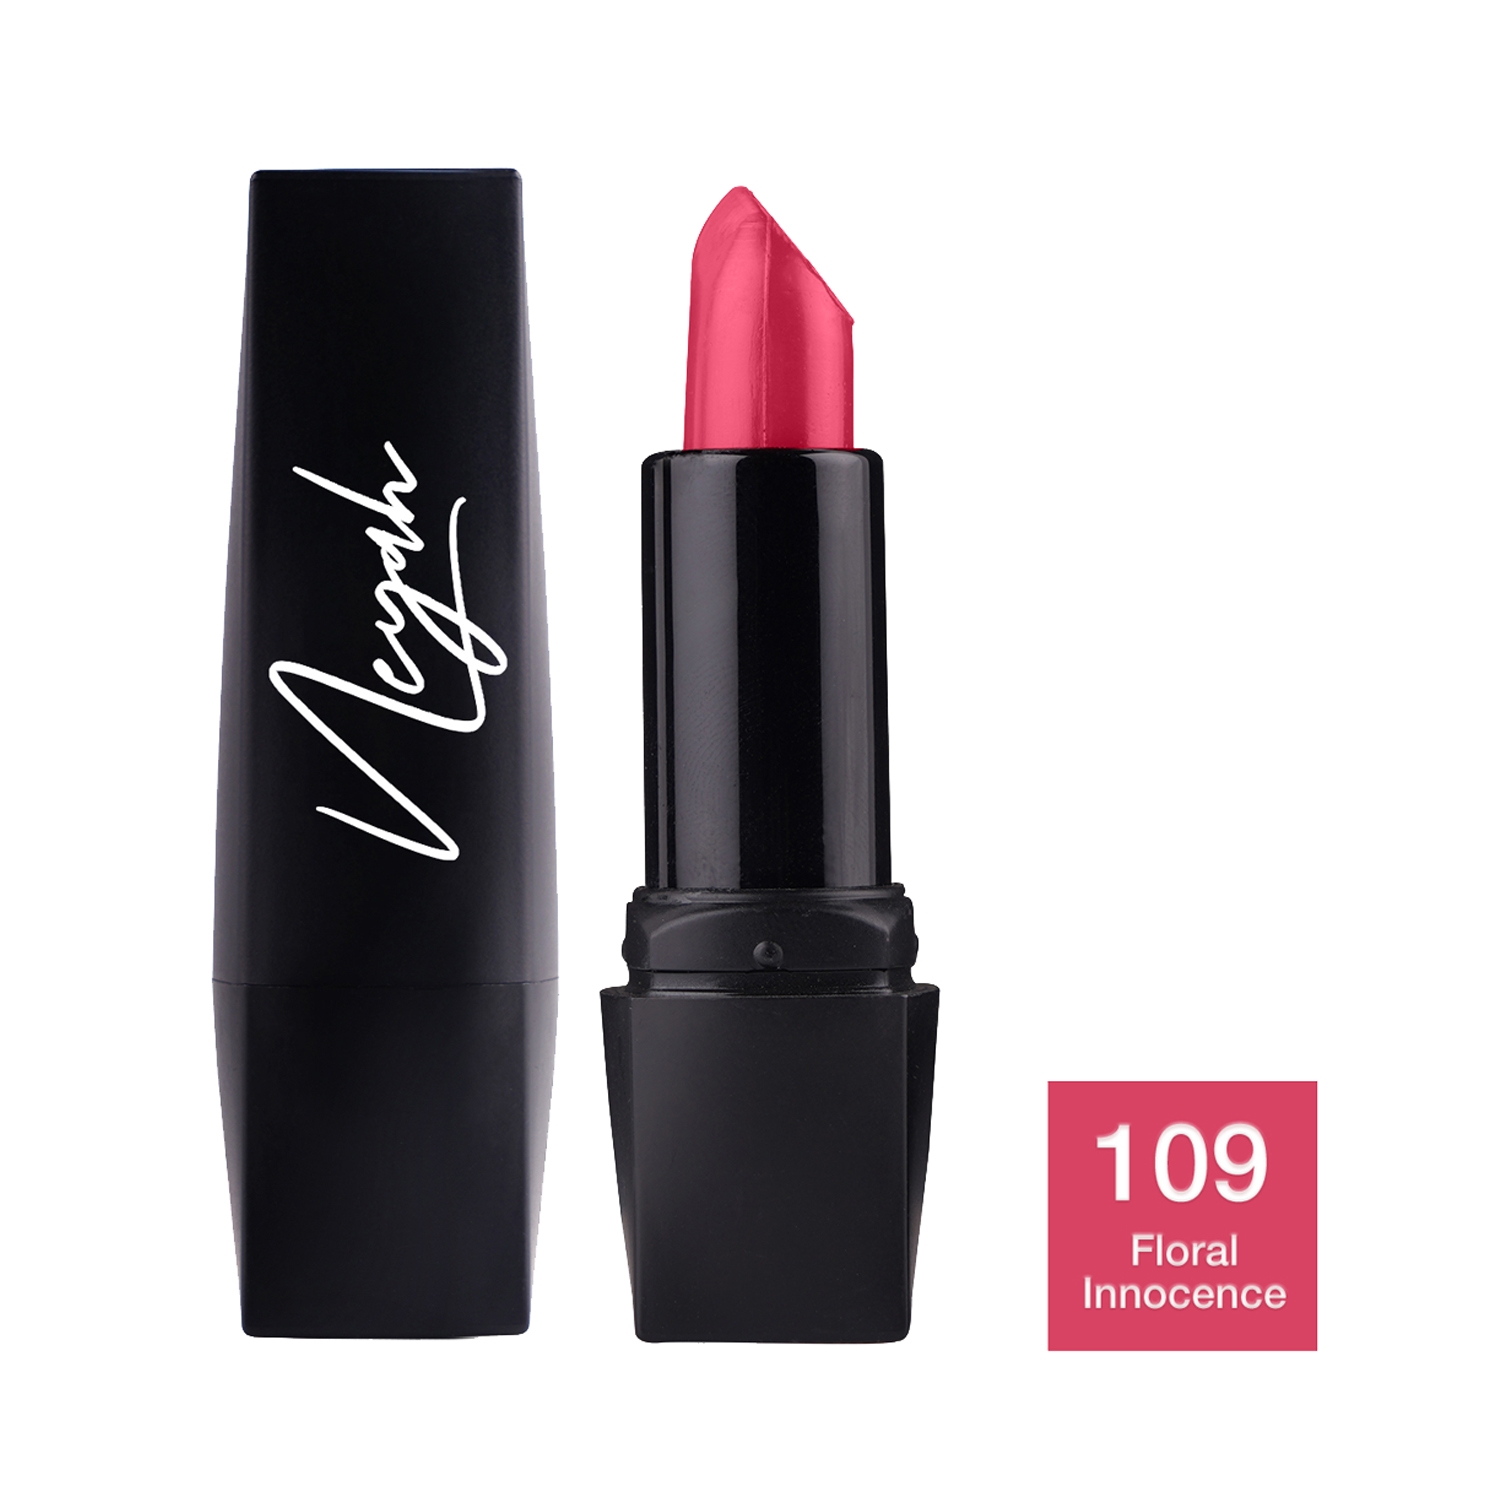 Neyah | Neyah Creamlicious Matte Lipstick - 109 Floral Innocence (4g)